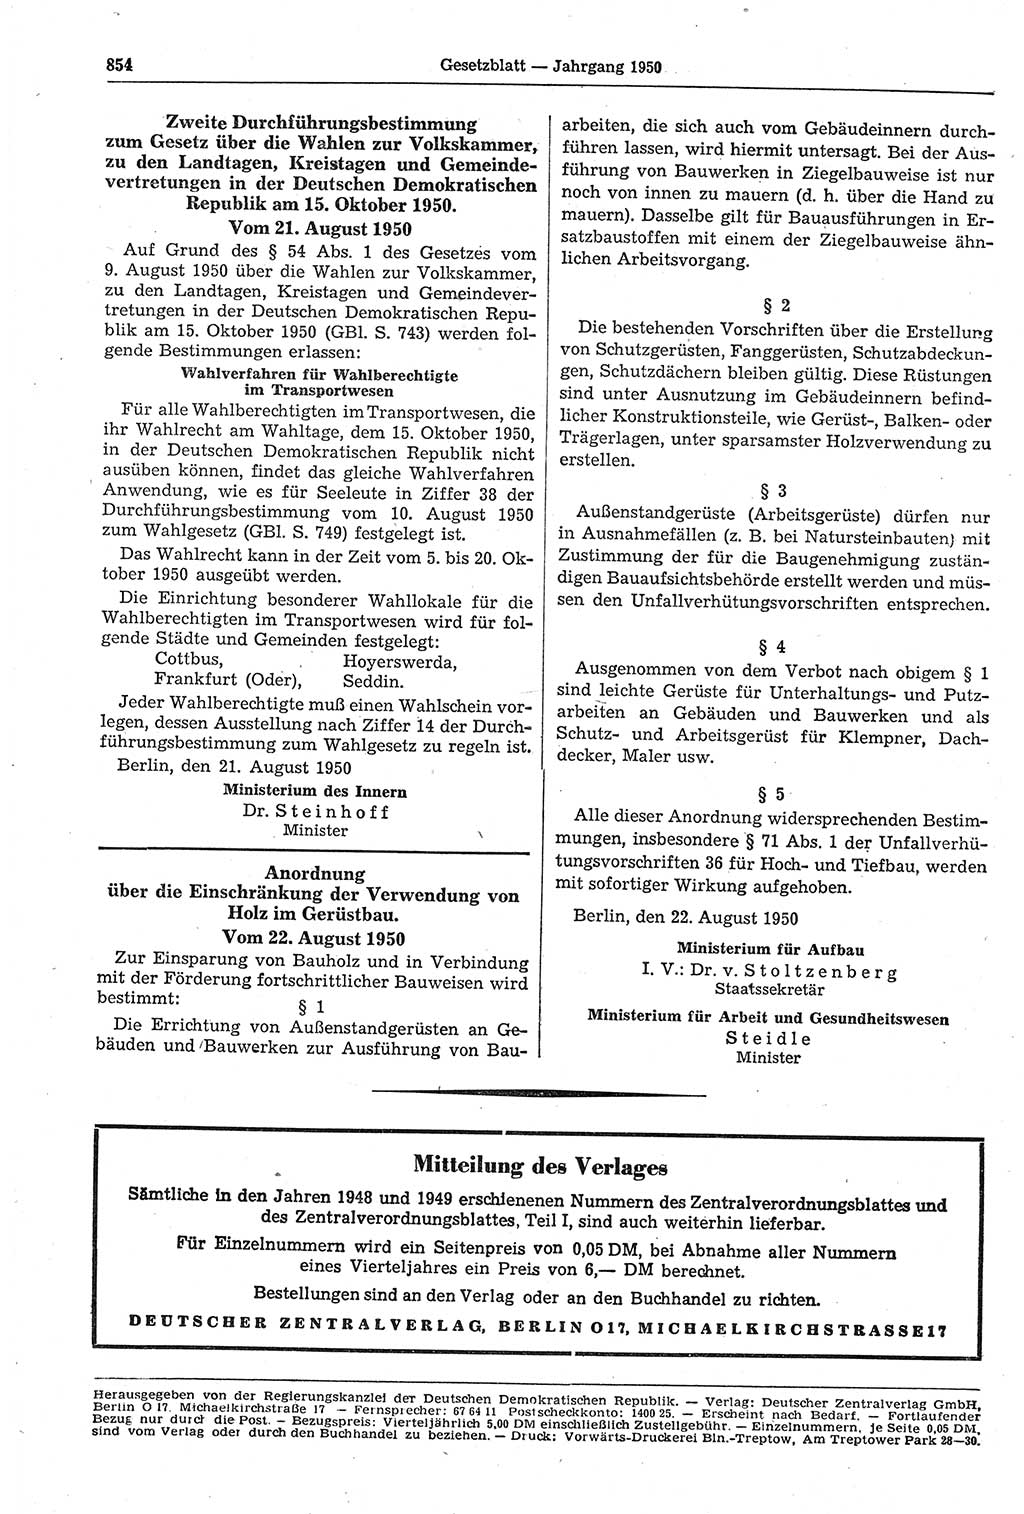 Gesetzblatt (GBl.) der Deutschen Demokratischen Republik (DDR) 1950, Seite 854 (GBl. DDR 1950, S. 854)